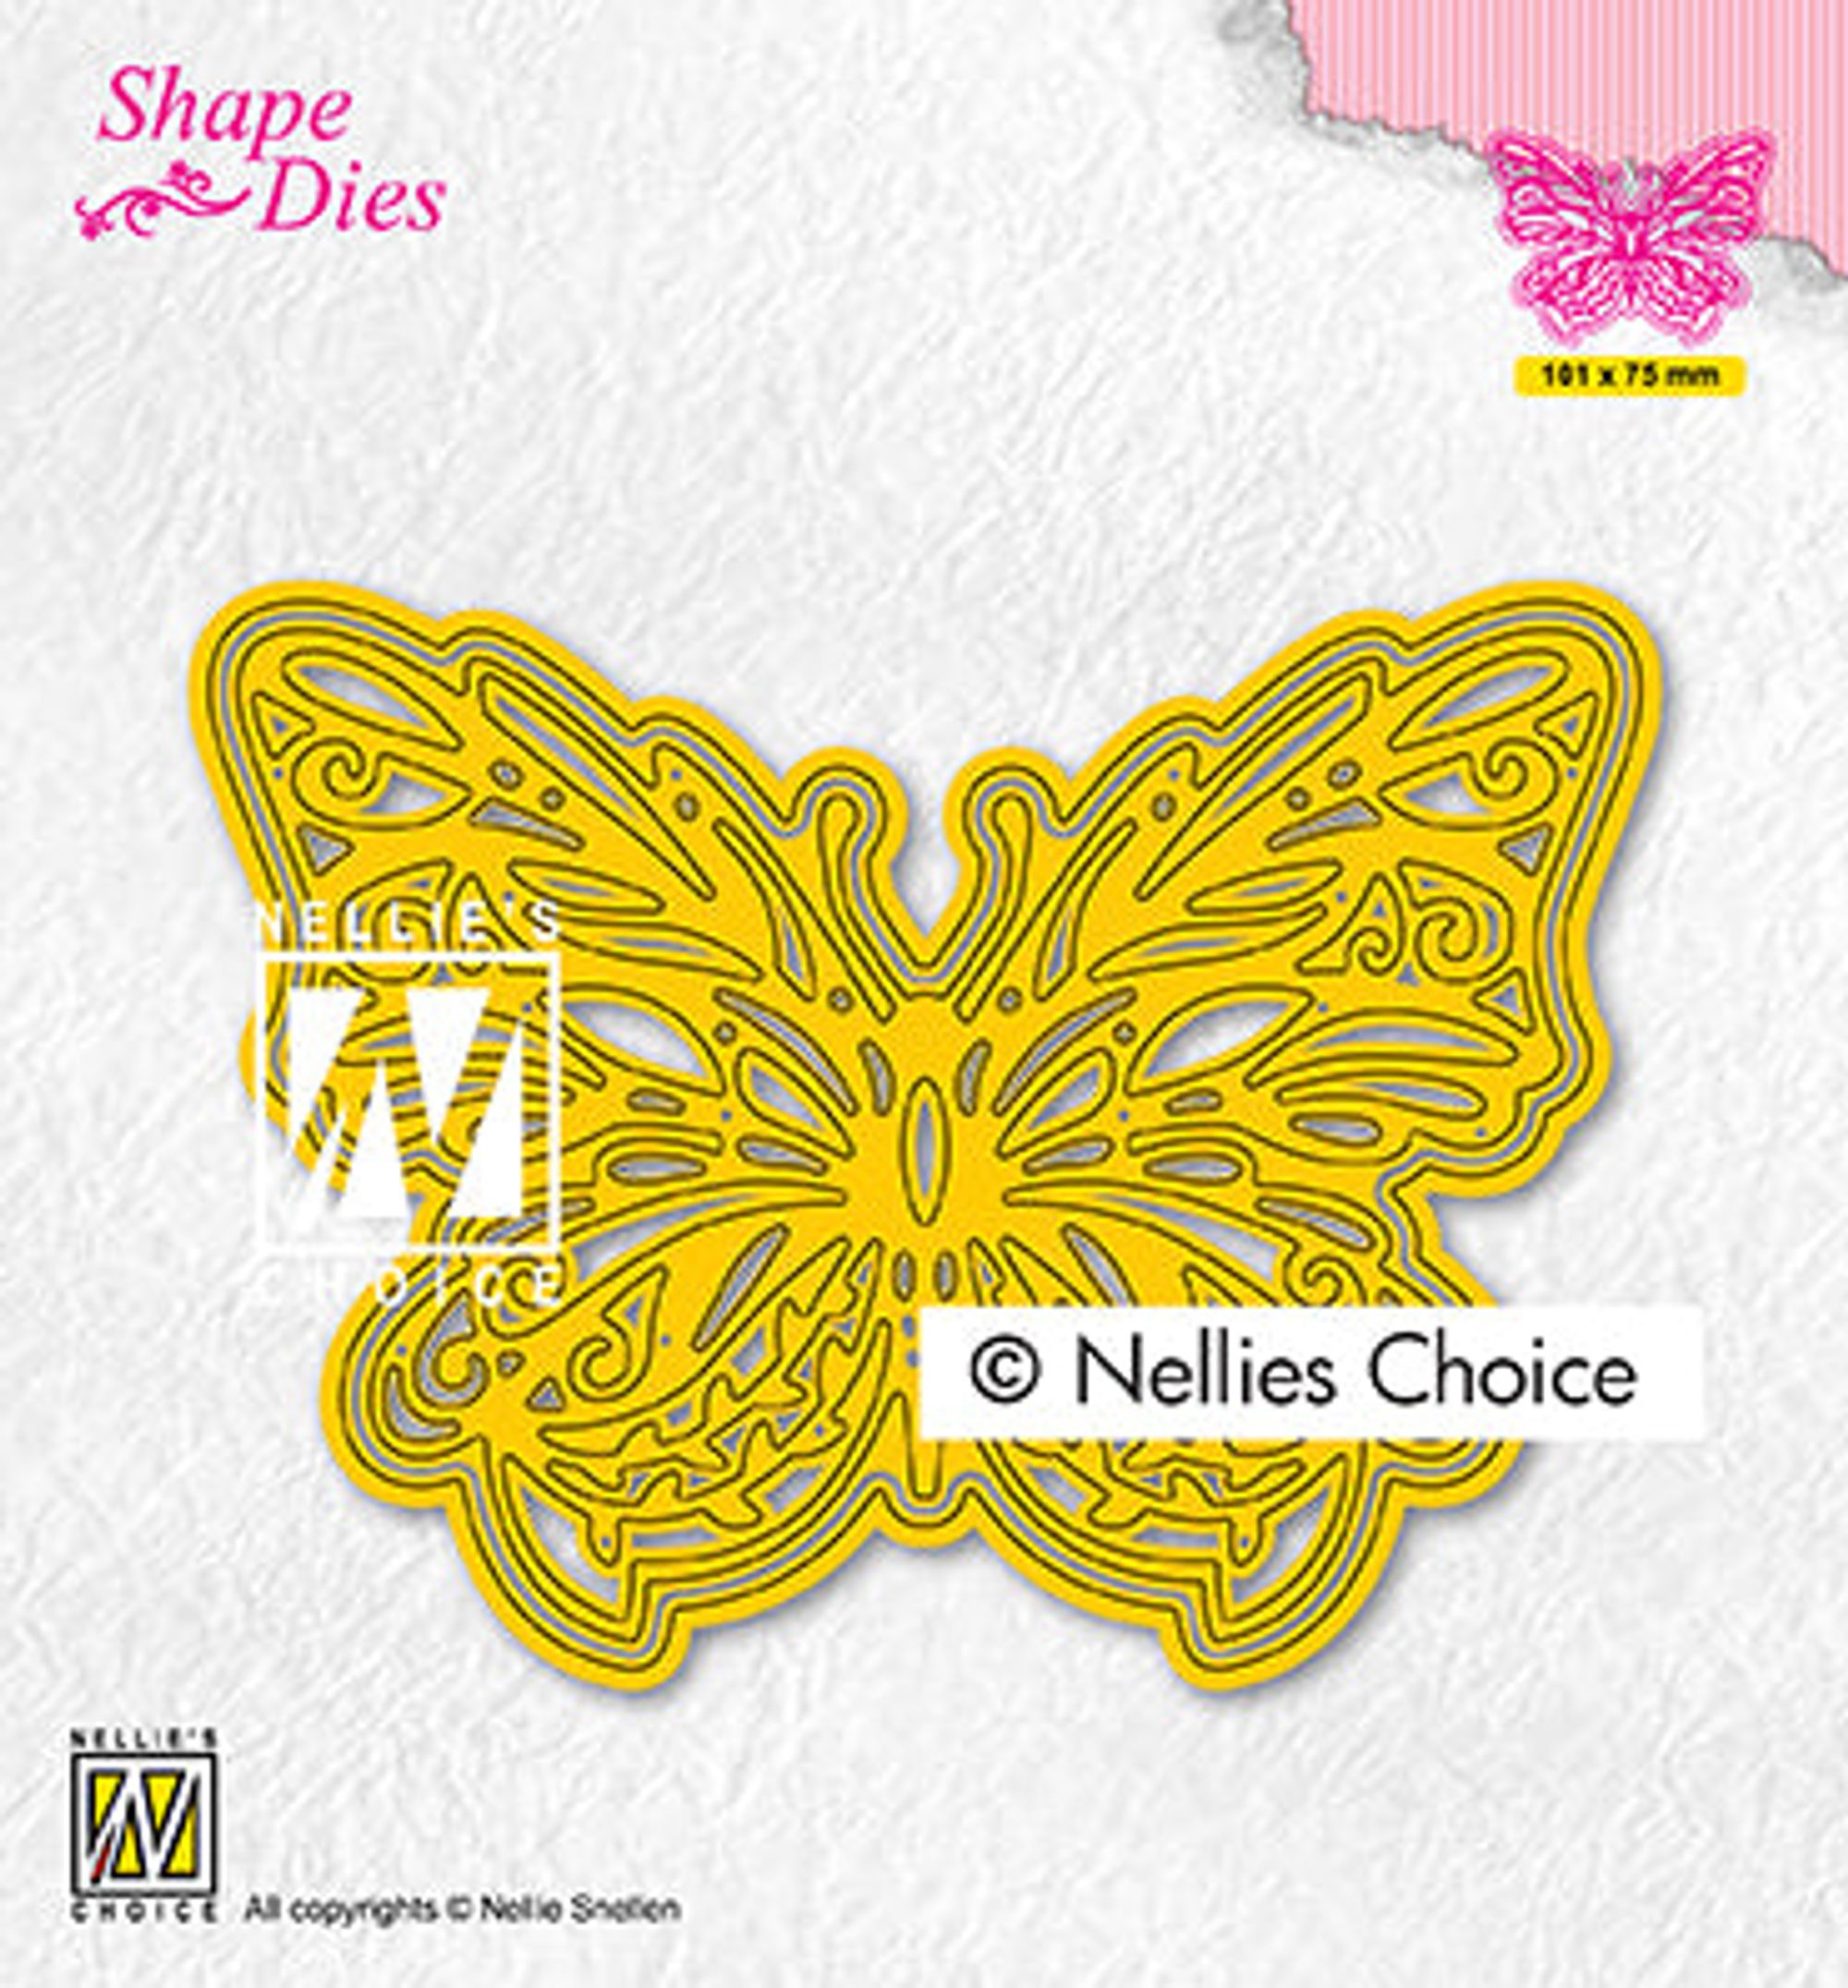 Shape Dies Butterfly